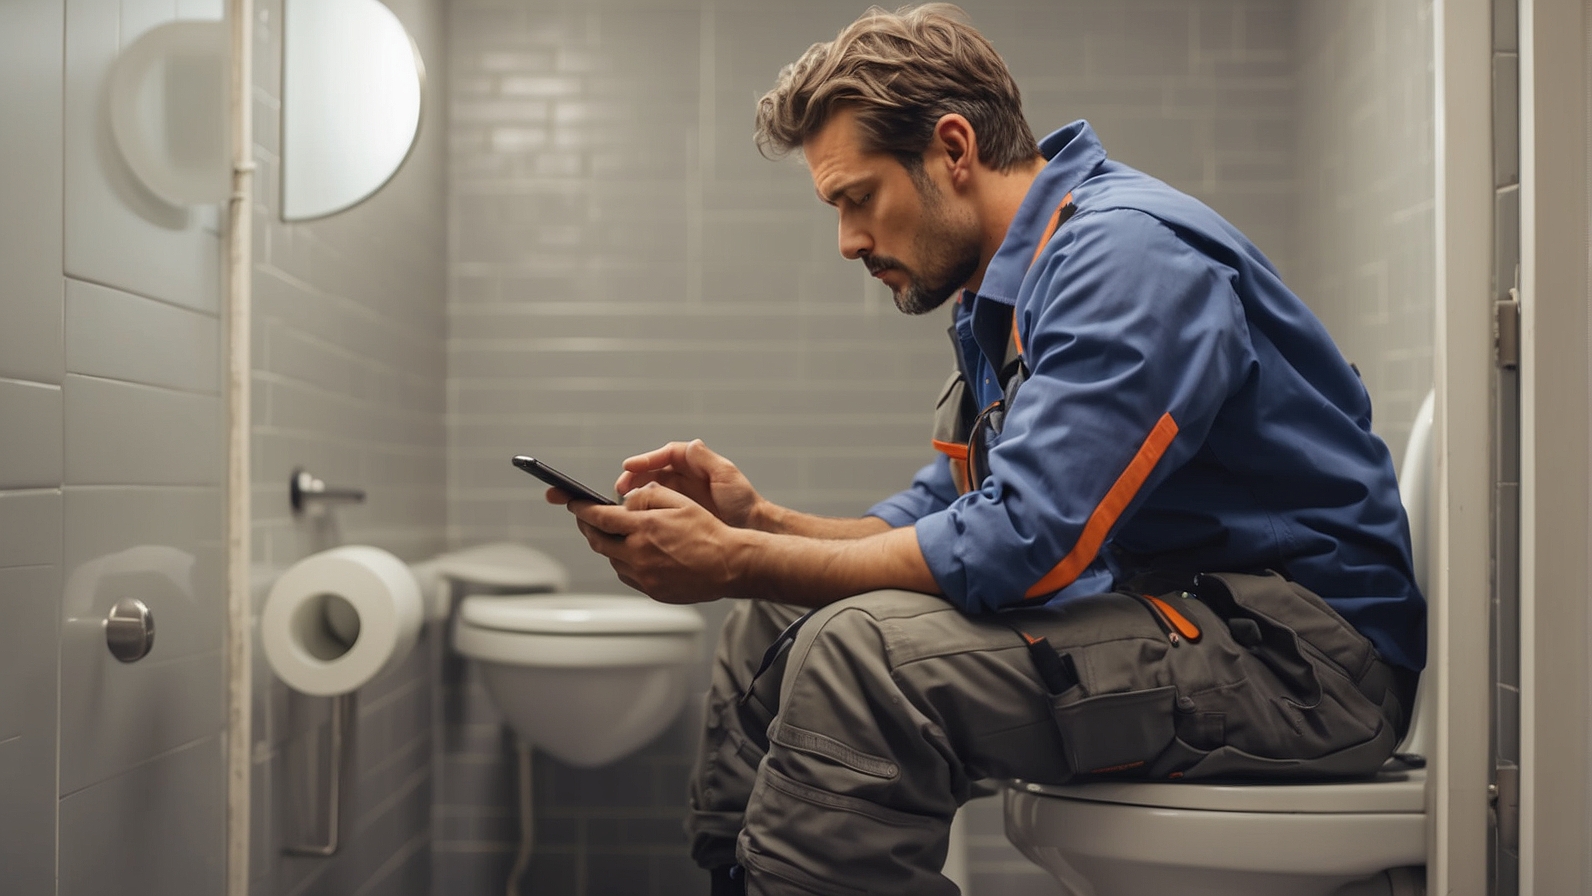 Smartphone Unterweisung - Arbeiter mit Handy auf Toilette